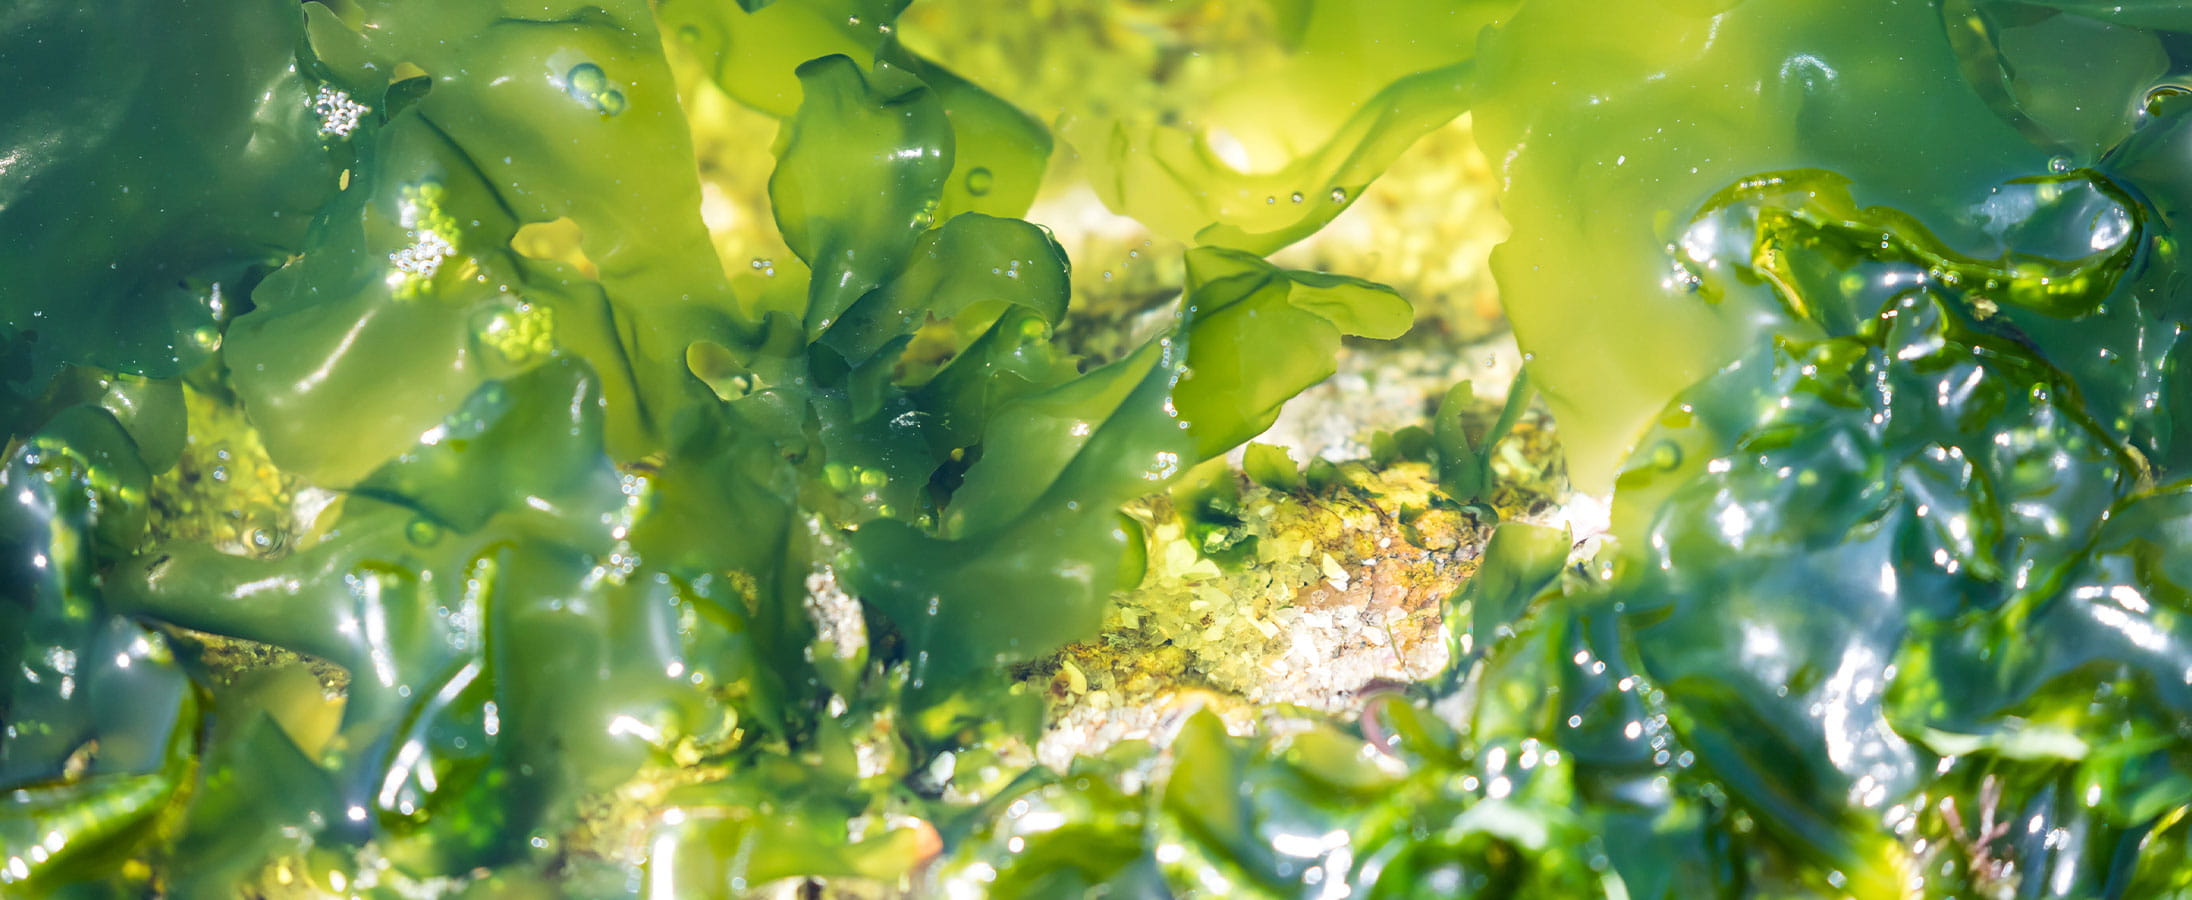 Marine algae used in beauty treatments